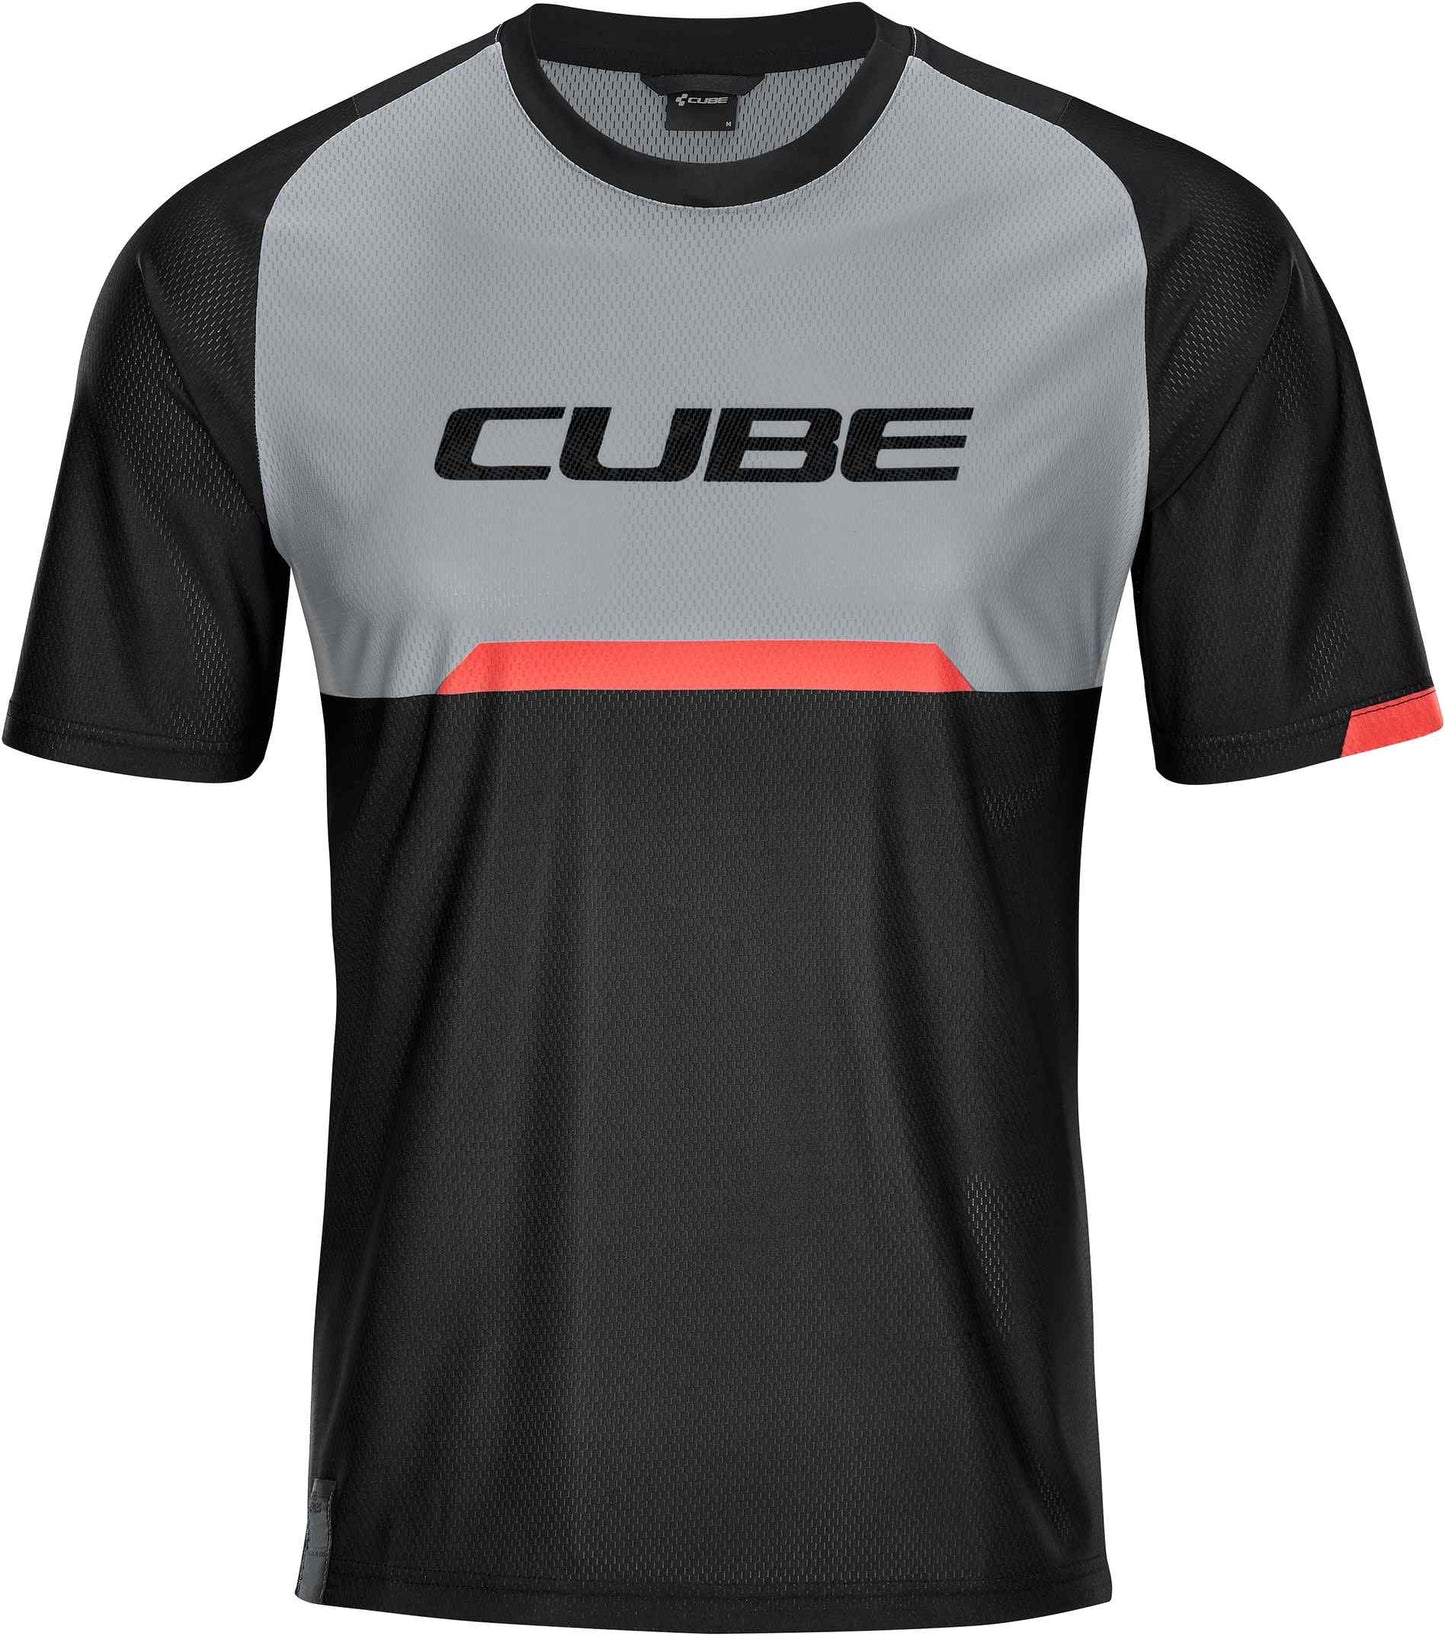 CUBE Edge Round Neck Jersey S/S Black/Grey